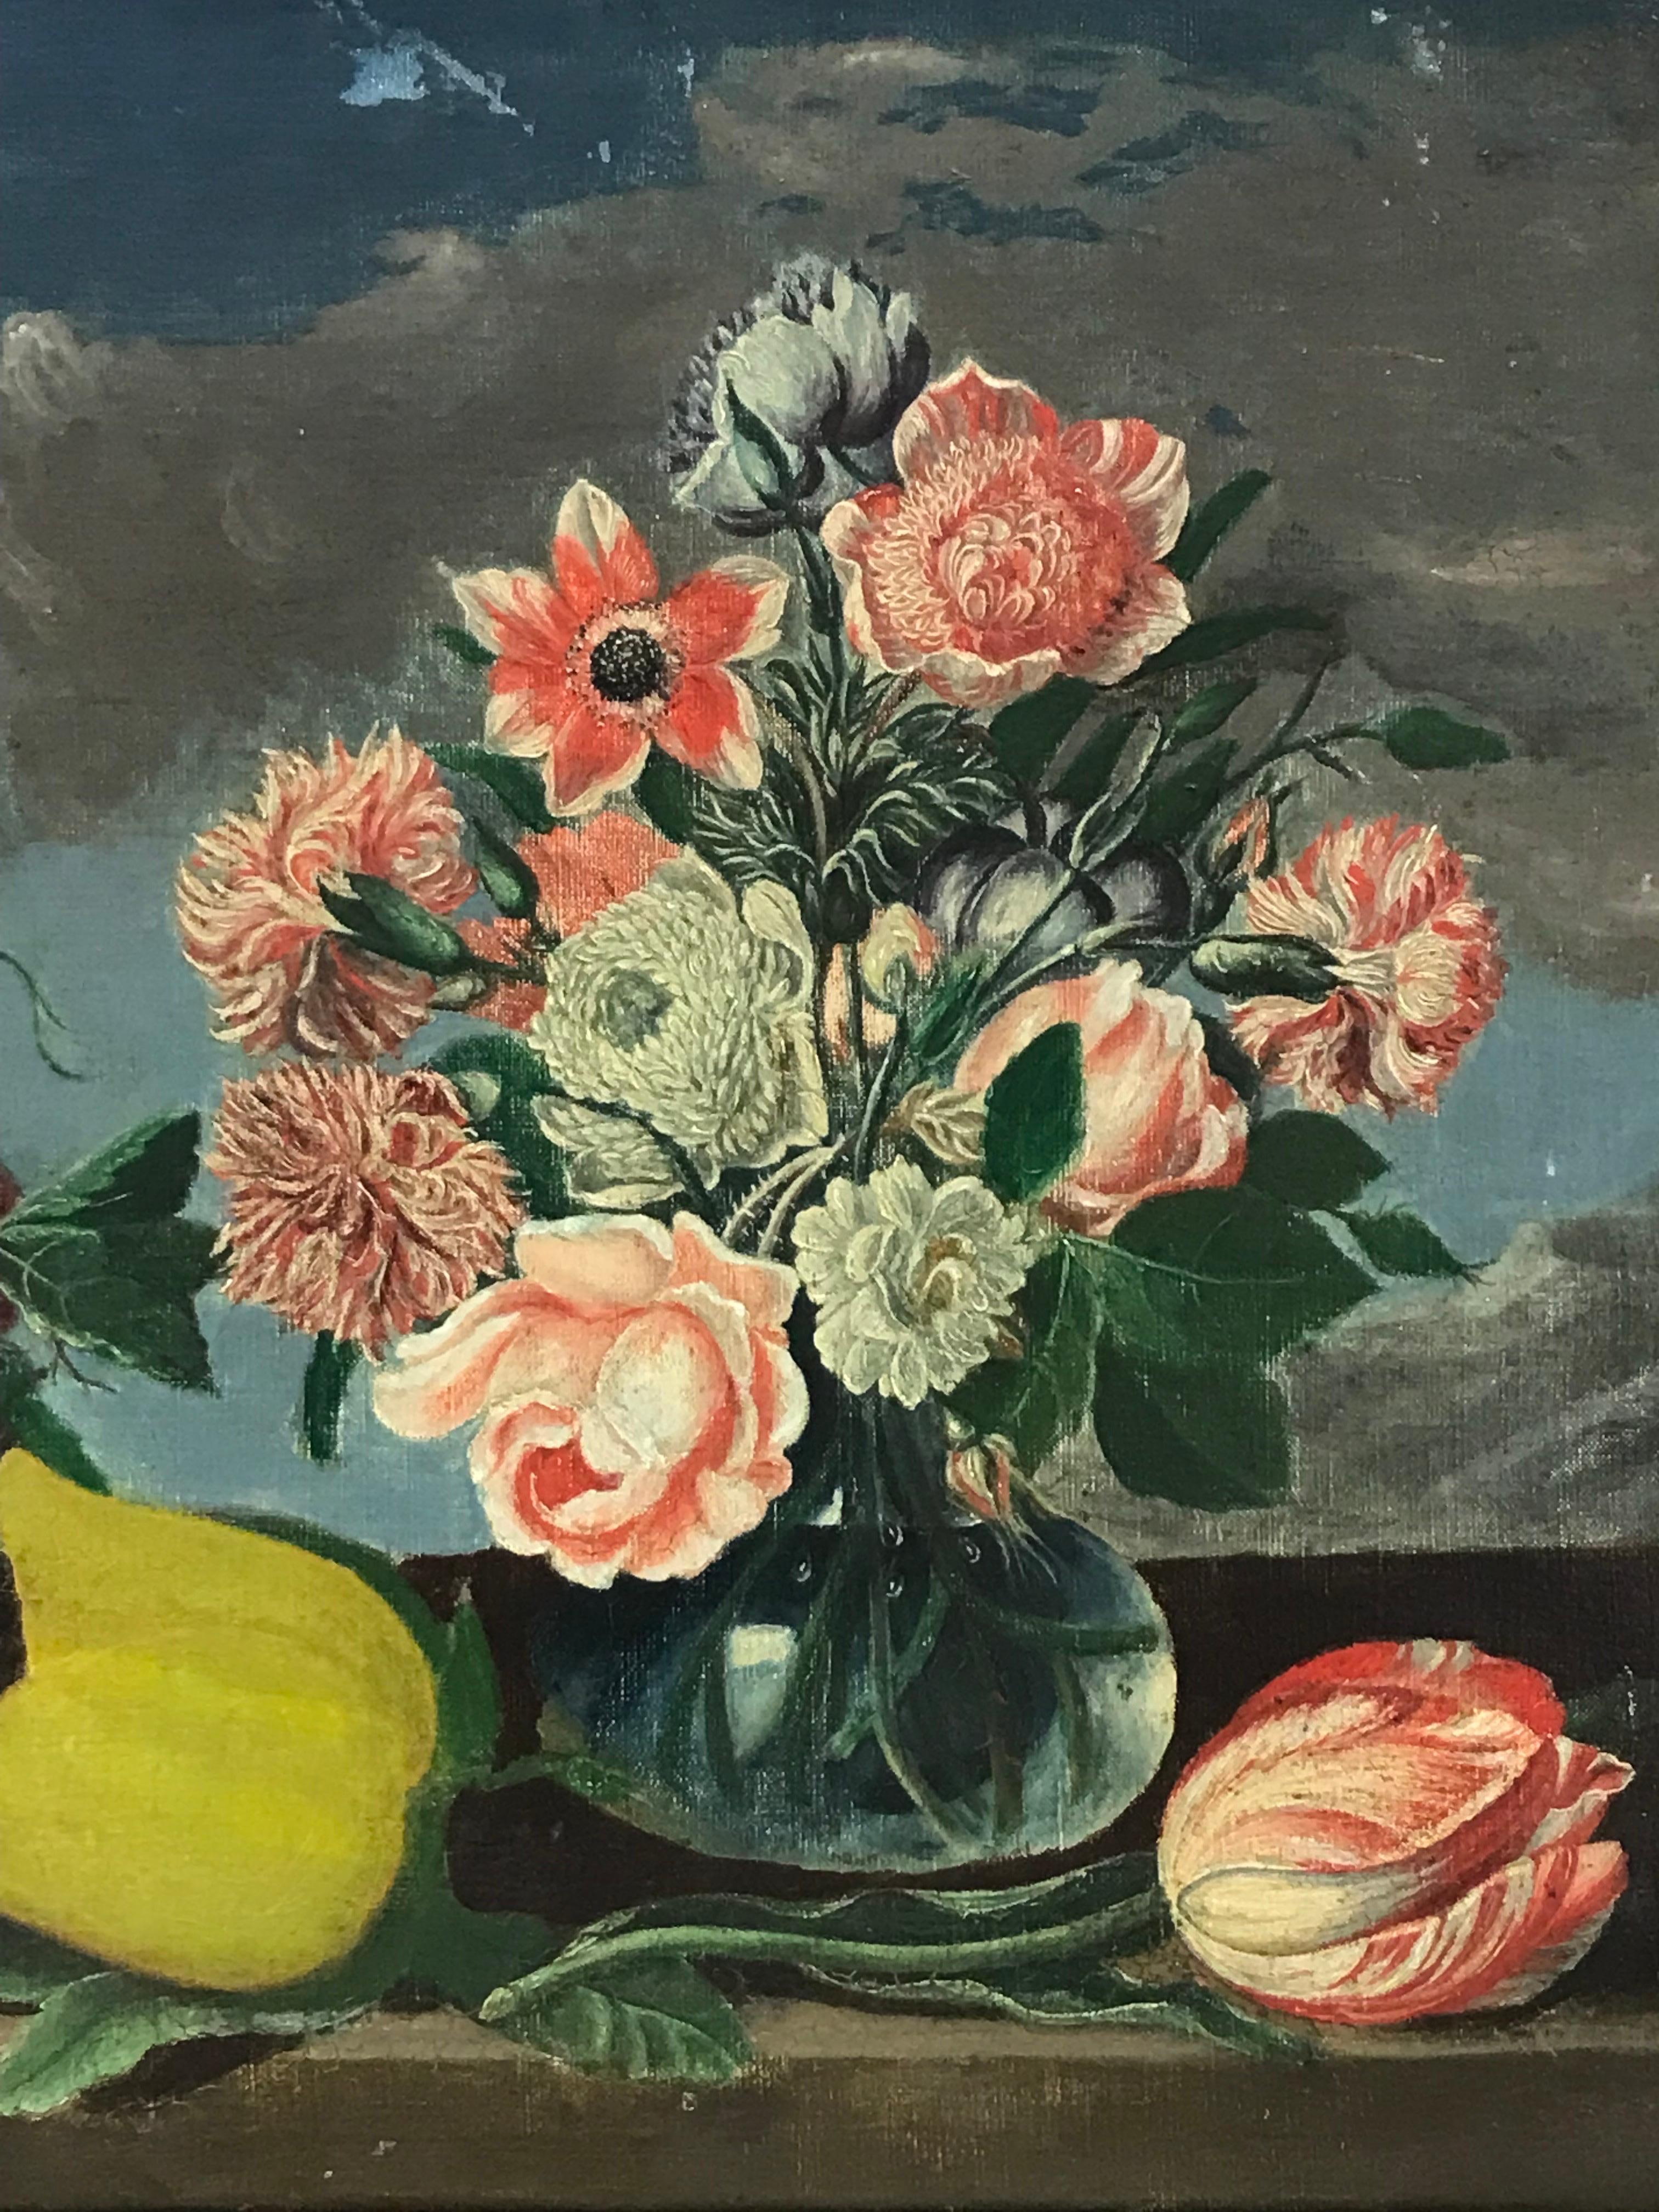 Klassisches französisches Stillleben des 19. Jahrhunderts mit Blumen und Blumenornamenten, ideale Inneneinrichtung  – Painting von French School